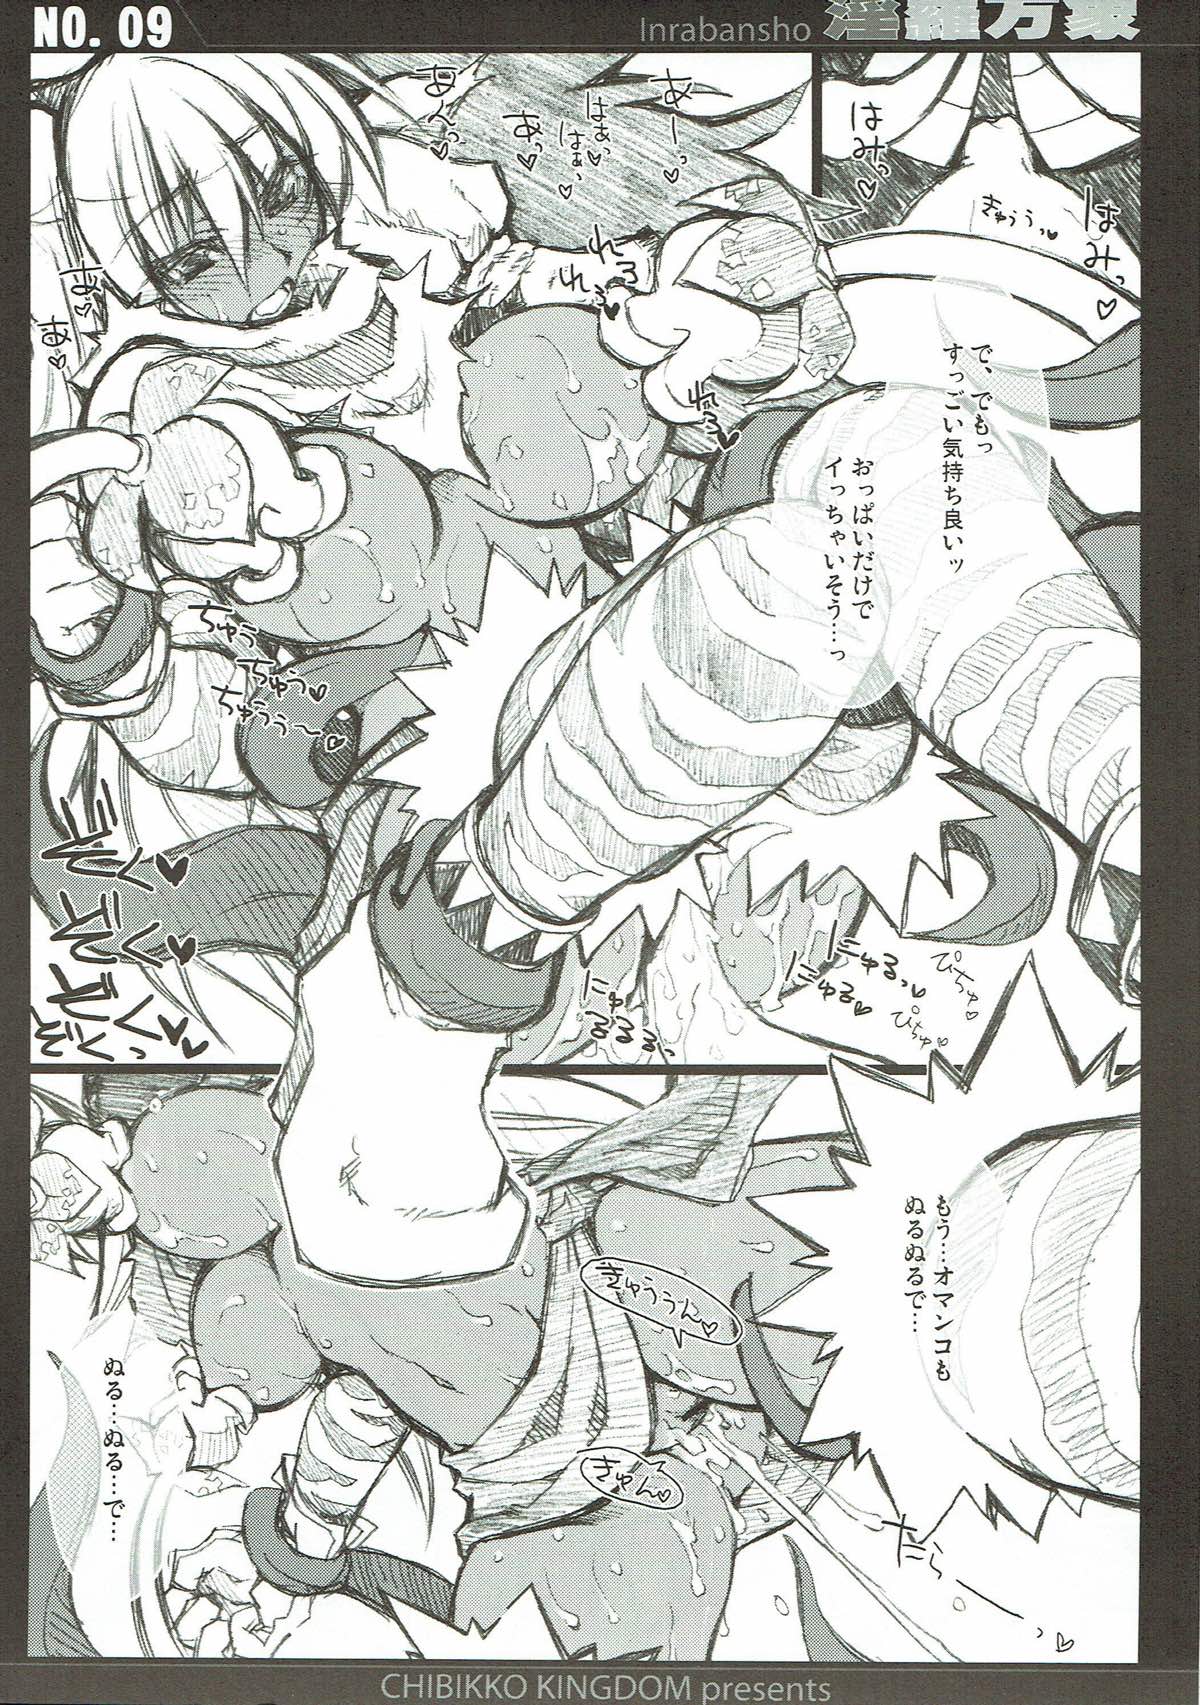 (SC31) [CHIBIKKO KINGDOM (Kekocha)] Inrabansho Kanzenban (Shinrabansho Choco) page 8 full